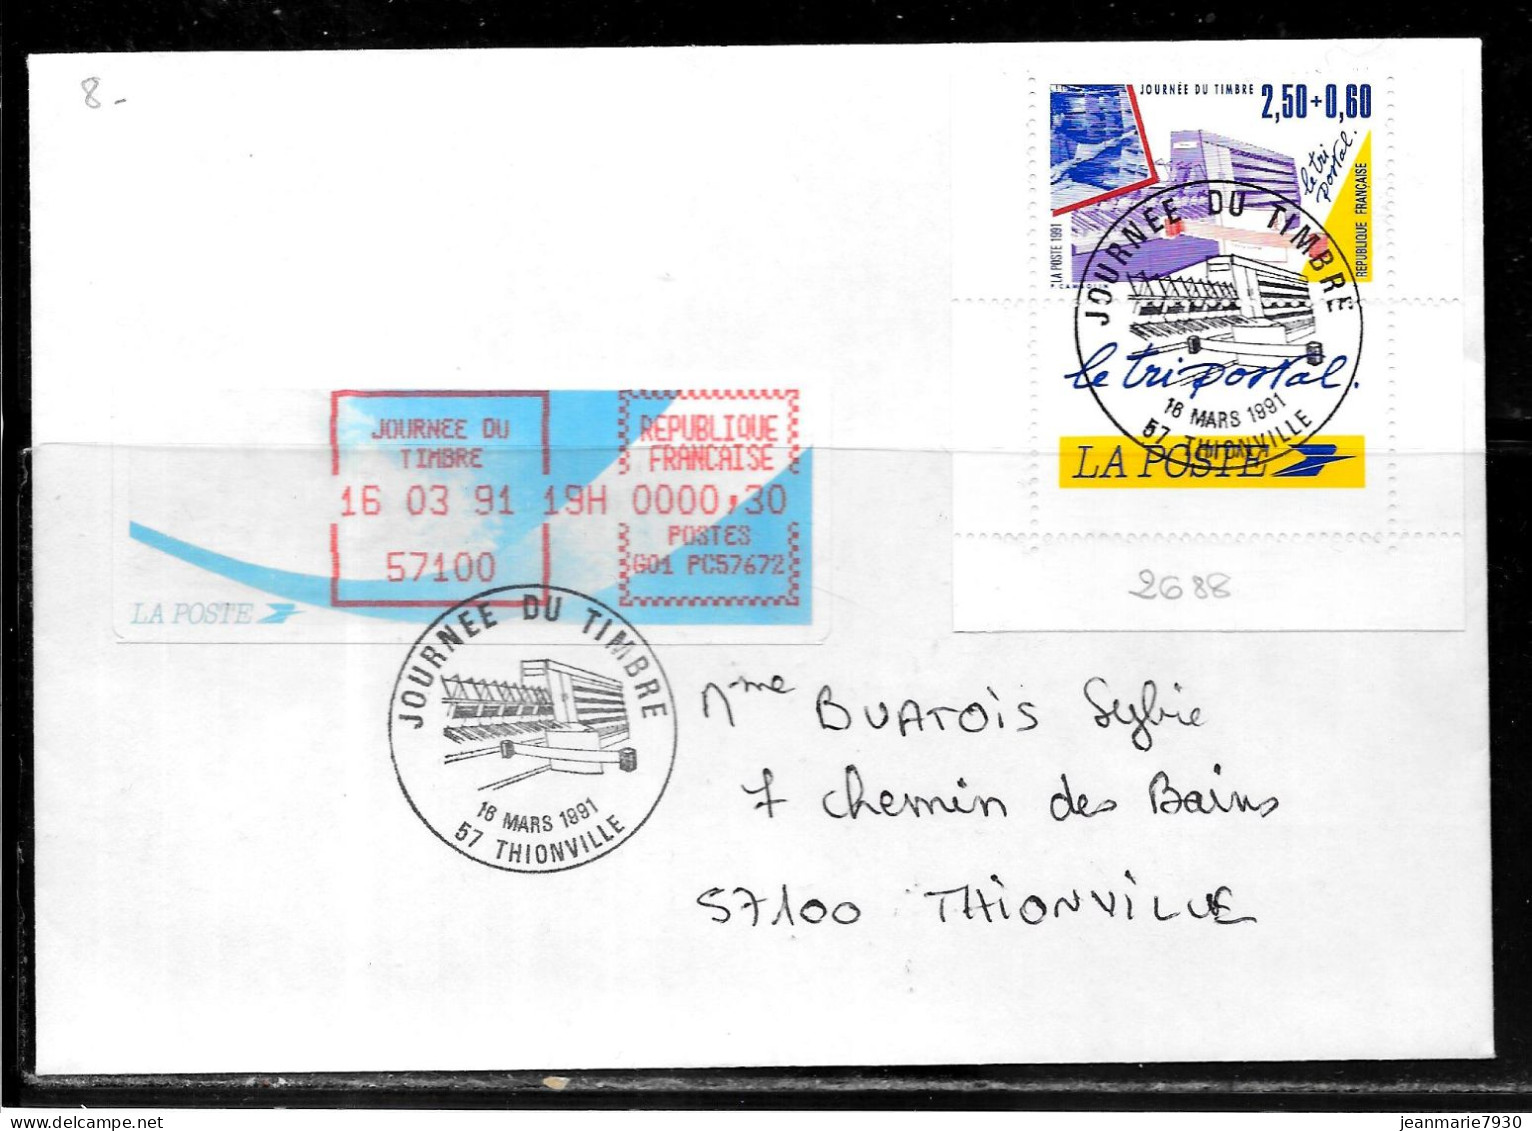 K183 - N° 2688 SUR LETTRE DE THIONVILLE DU 16/03/91 - JOURNEE DU TIMBRE - VIGNETTE D'AFFRANCHISSEMENT - Commemorative Postmarks